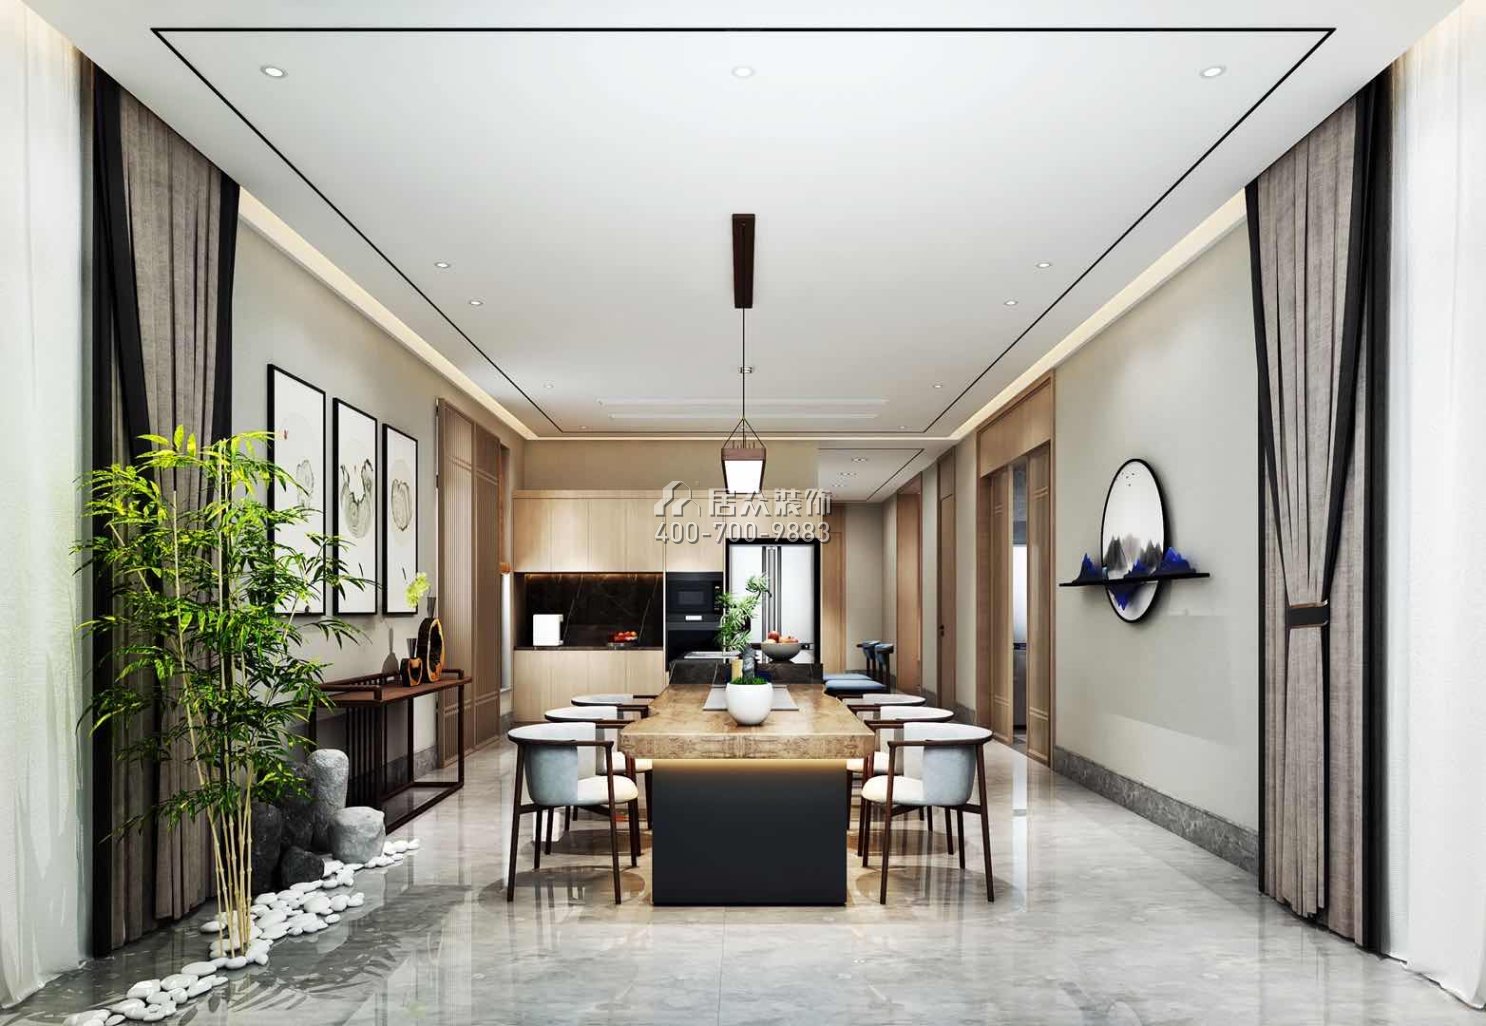 九洲保利天河620平方米中式风格别墅户型餐厅kok电竞平台效果图